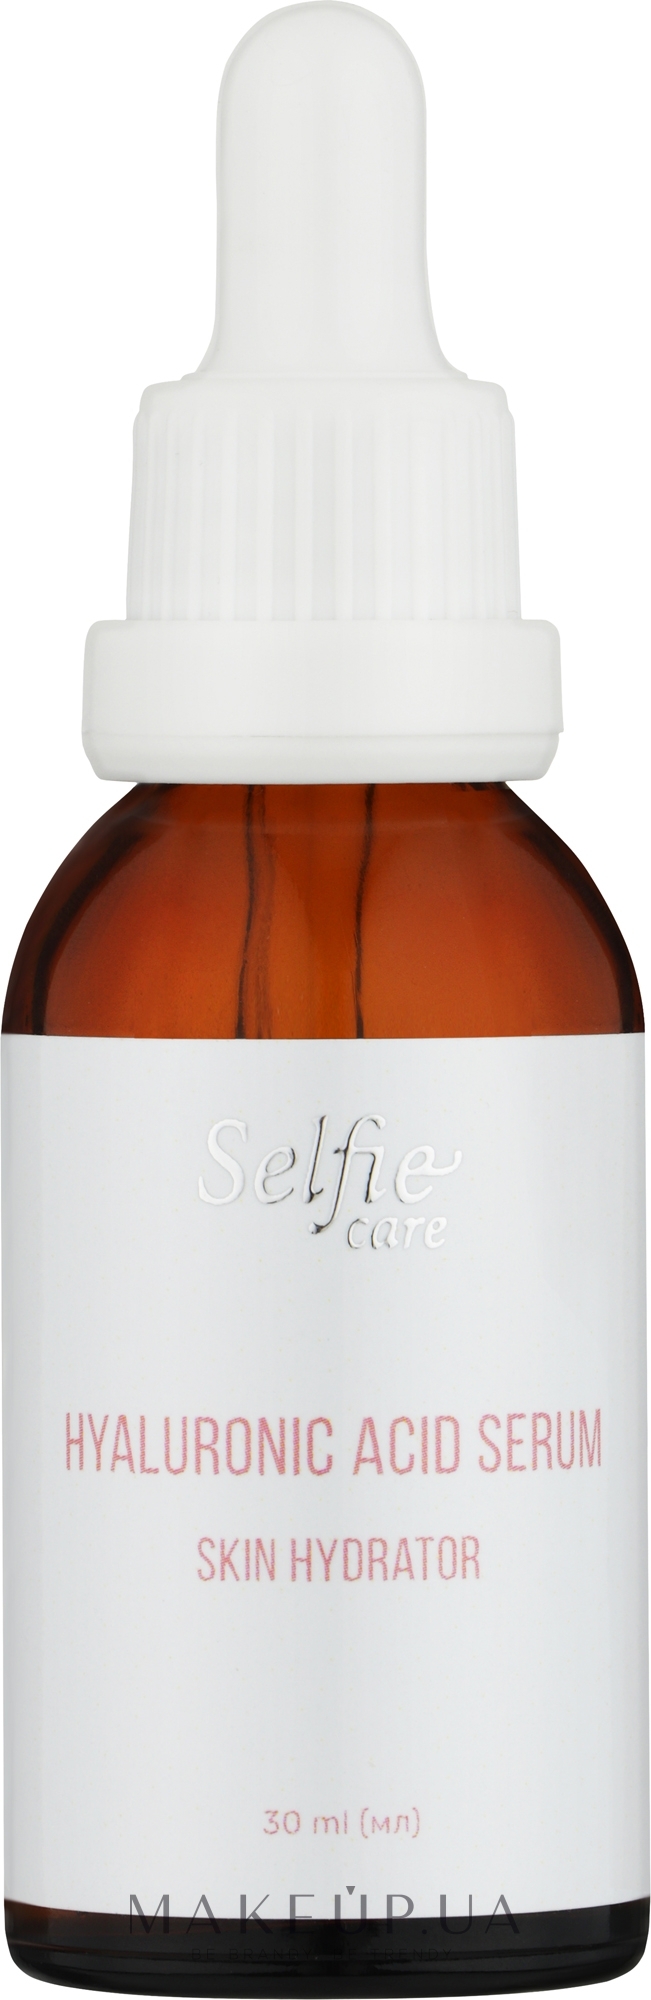 Увлажняющая сыворотка для лица с гиалуроновой кислотой - Selfie Care Hyaluronic Acid Serum Skin Hydrator — фото 30ml